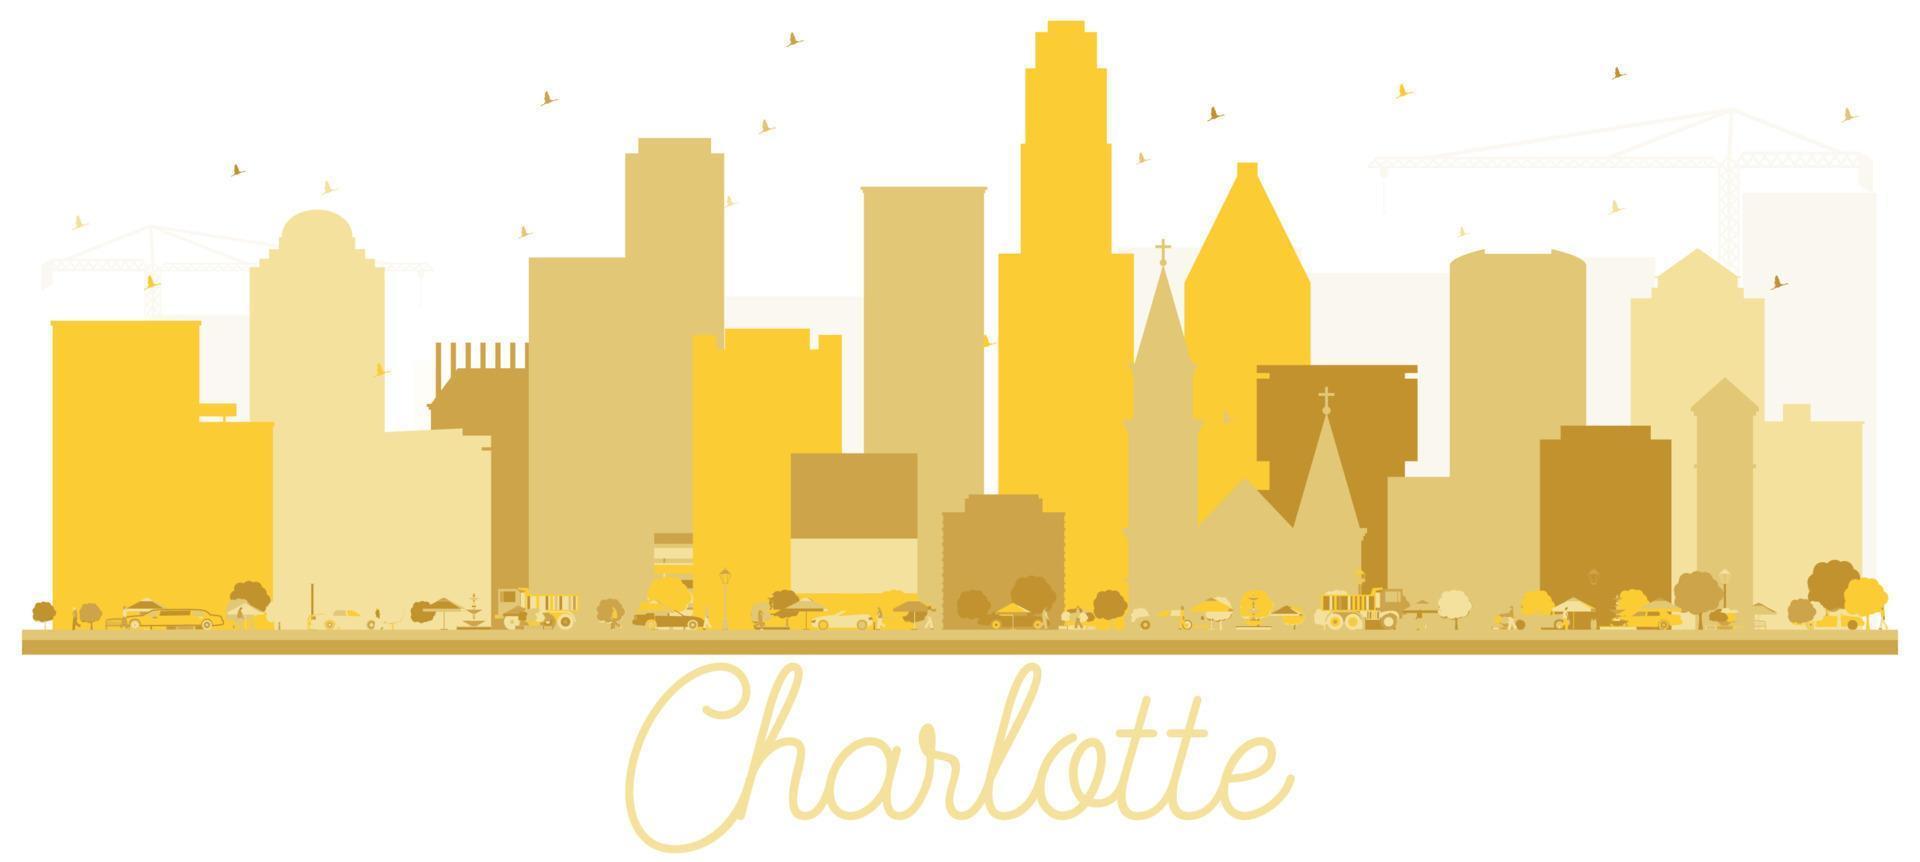 Charlotte noorden carolina Verenigde Staten van Amerika stad horizon gouden silhouet. vector